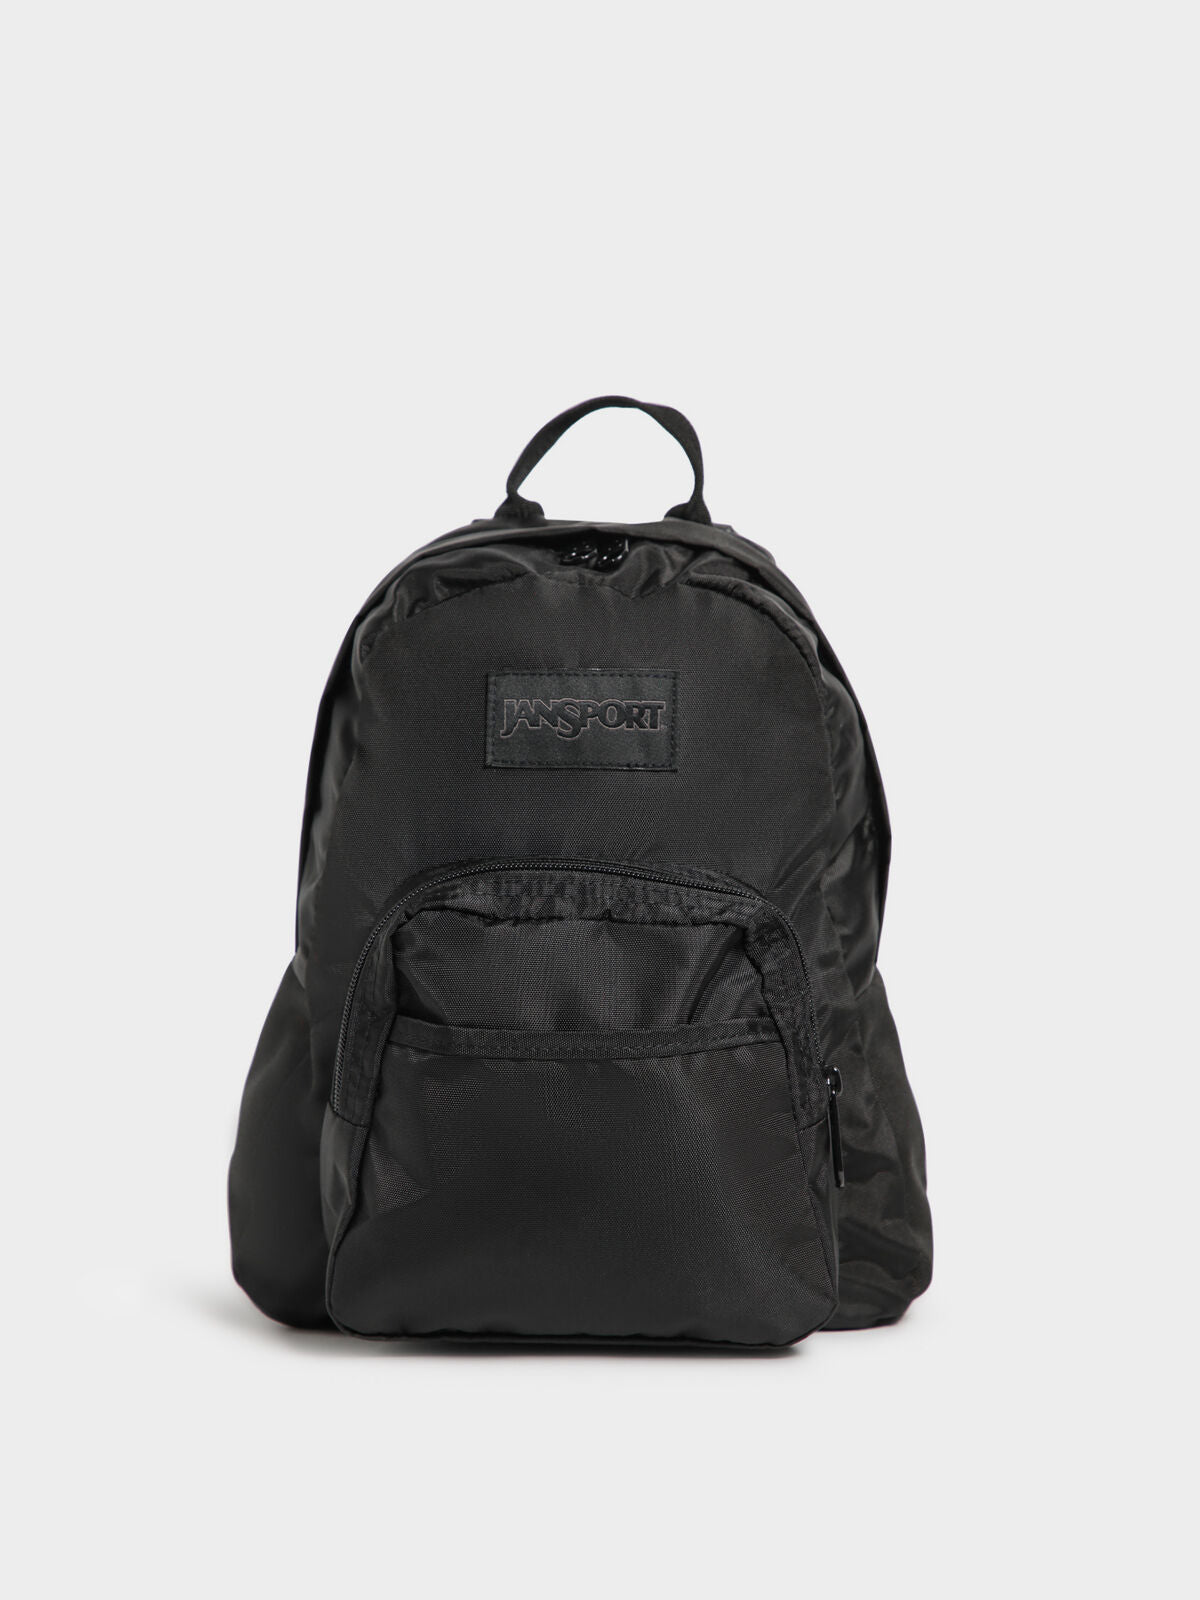 Mono Half Pint Bag in Black